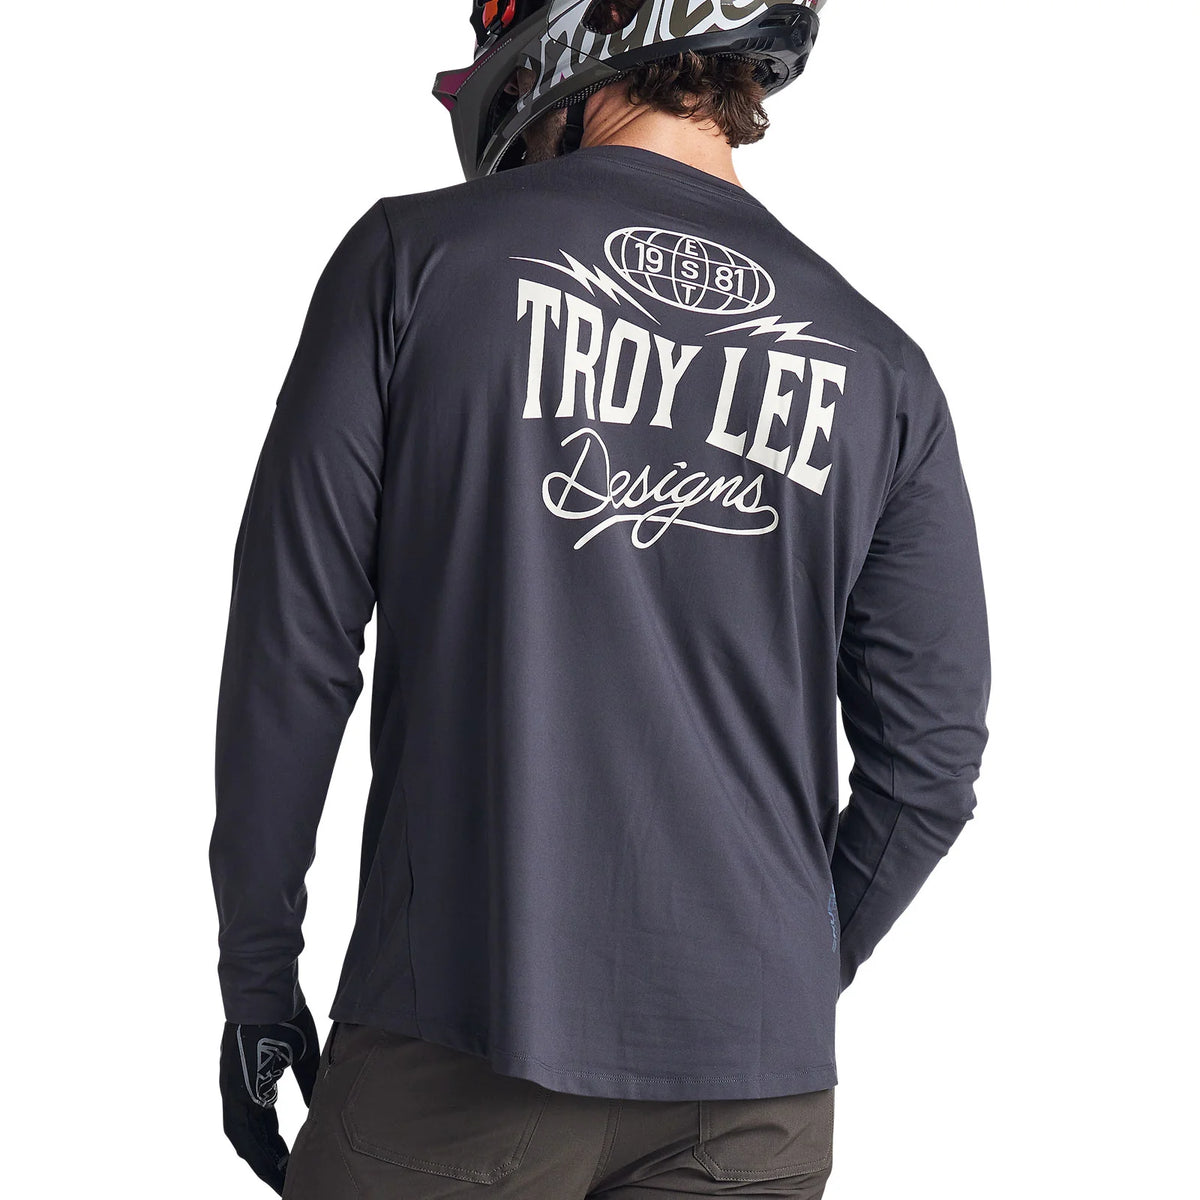 Troy Lee Designs Long Sleeve Ruckus Ride Adult Mountain Bike Tee